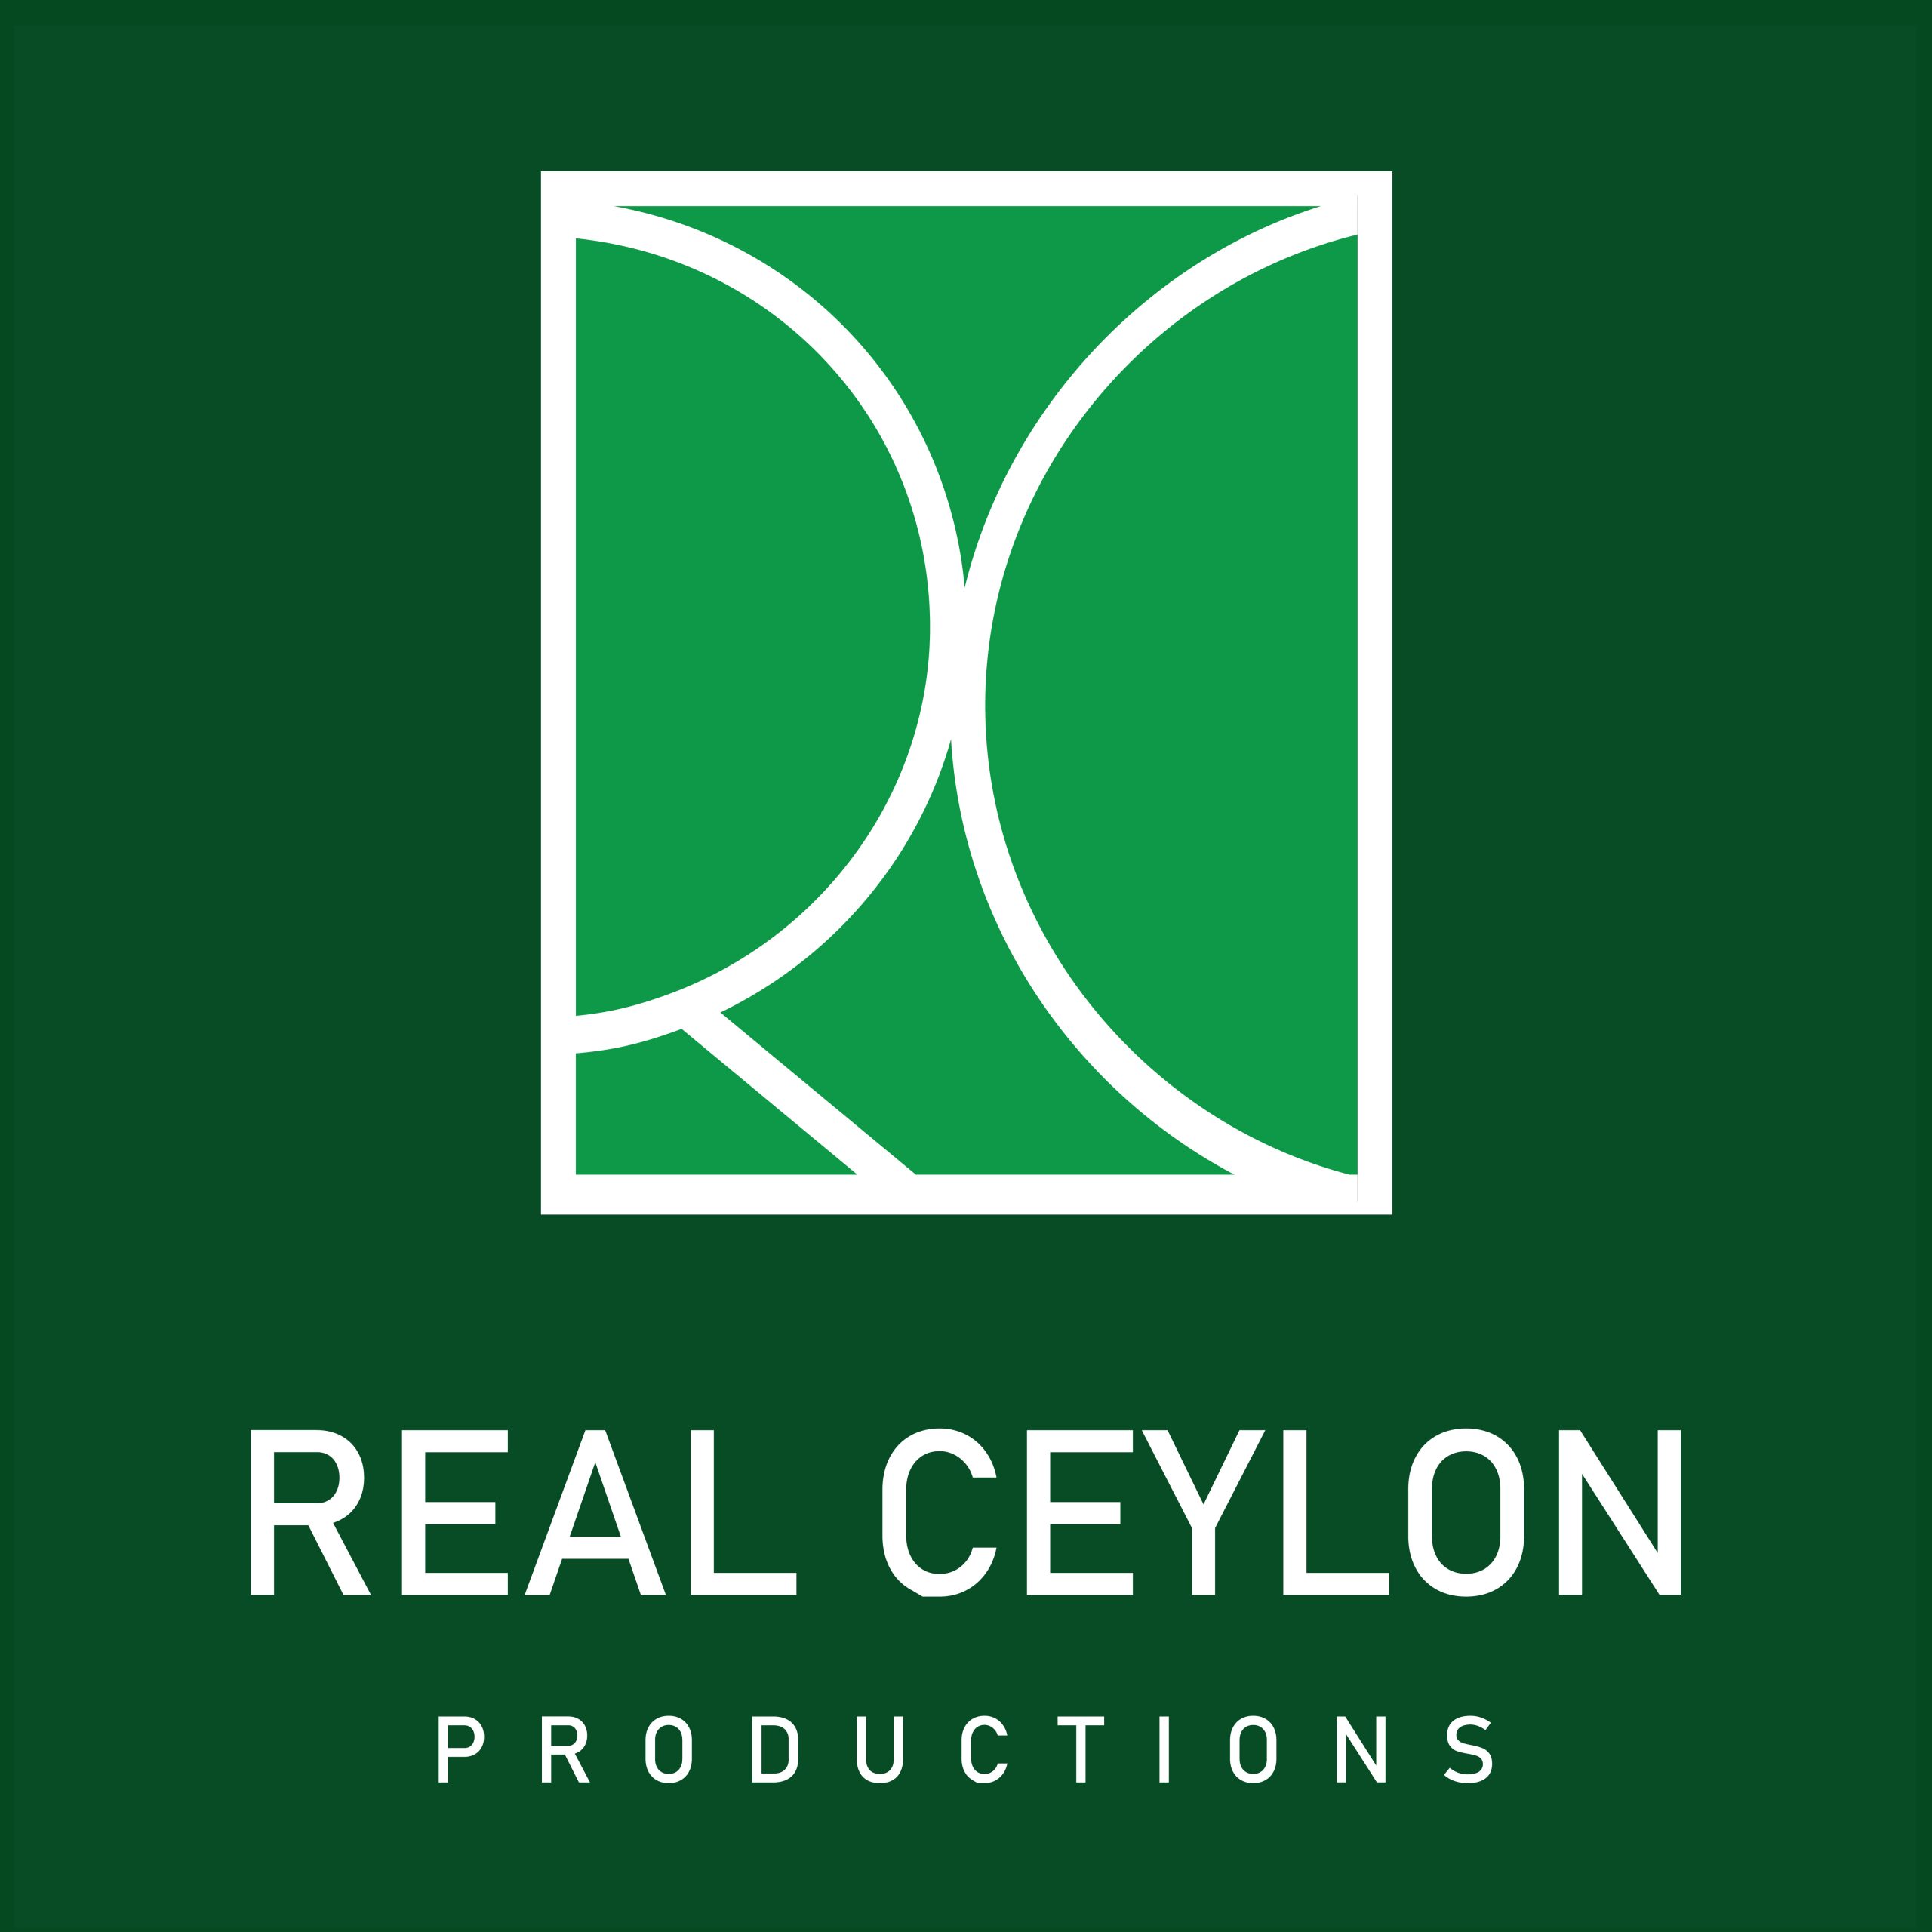 Real Ceylon